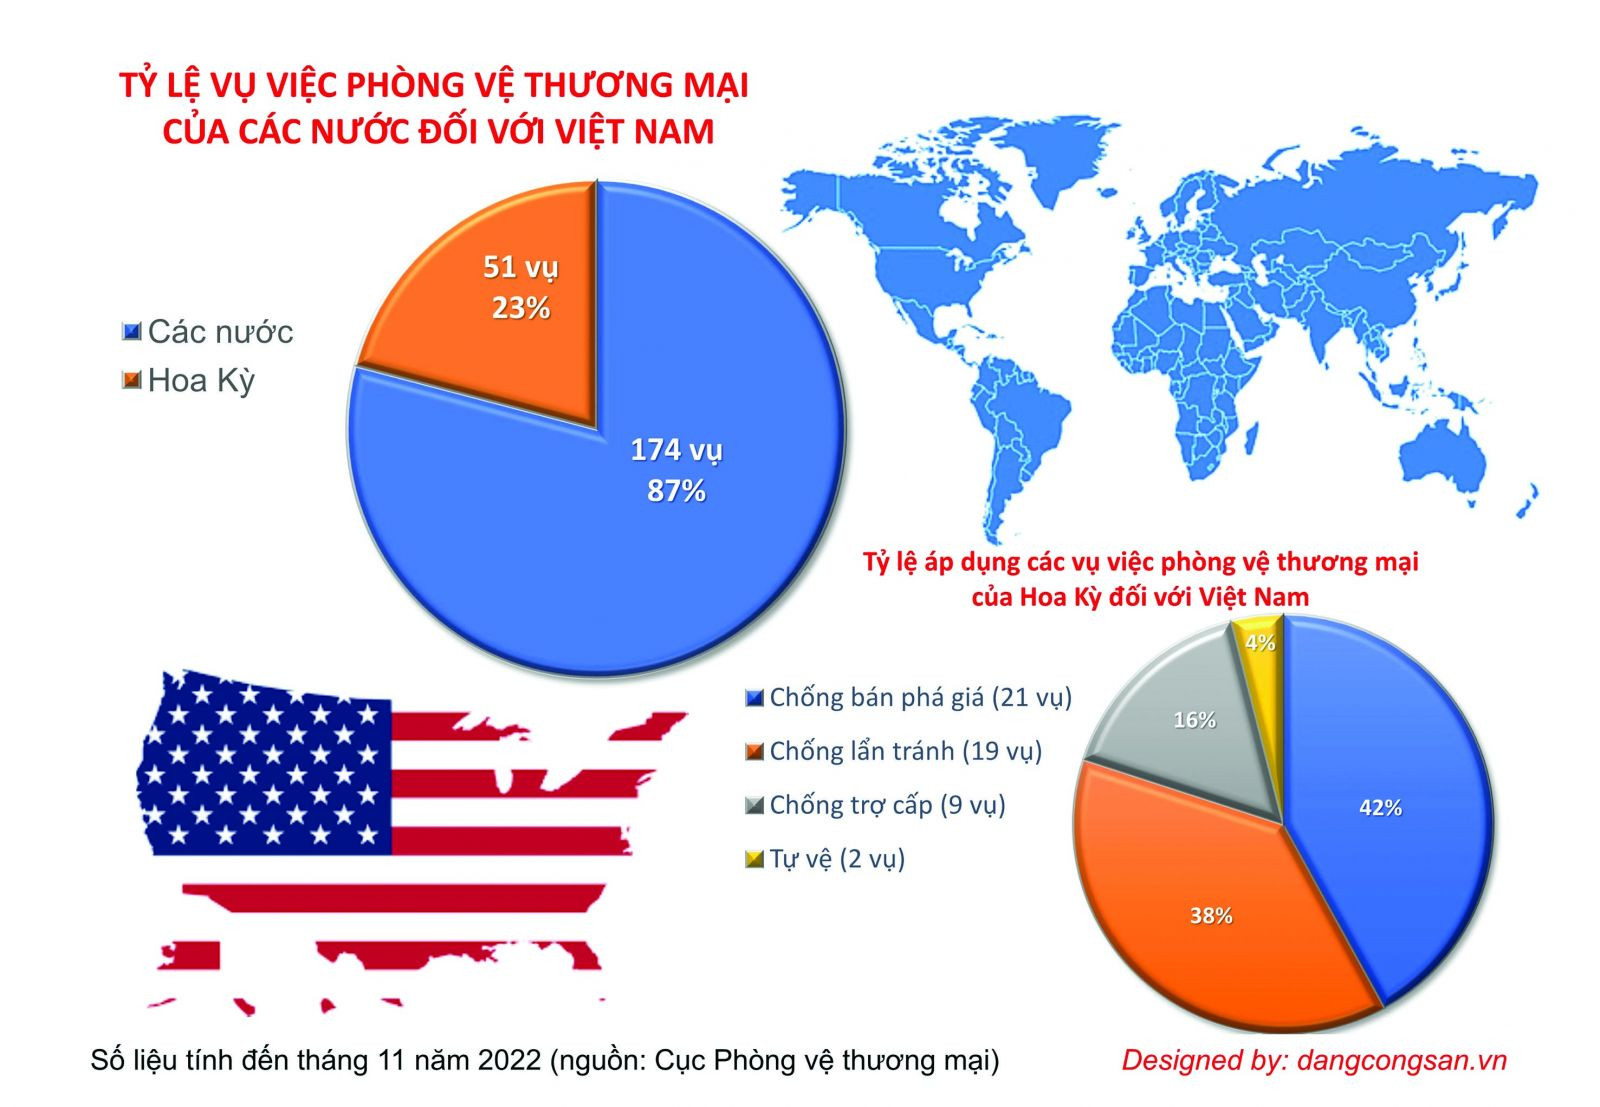 p/Tính đến tháng 11 năm 2022, Việt Nam đã phải chịu 225 vụ việc phòng vệ thương mại do các nước áp đặt. Nguồn: Cục Phòng vệ thương mại,p/Bộ Công Thương